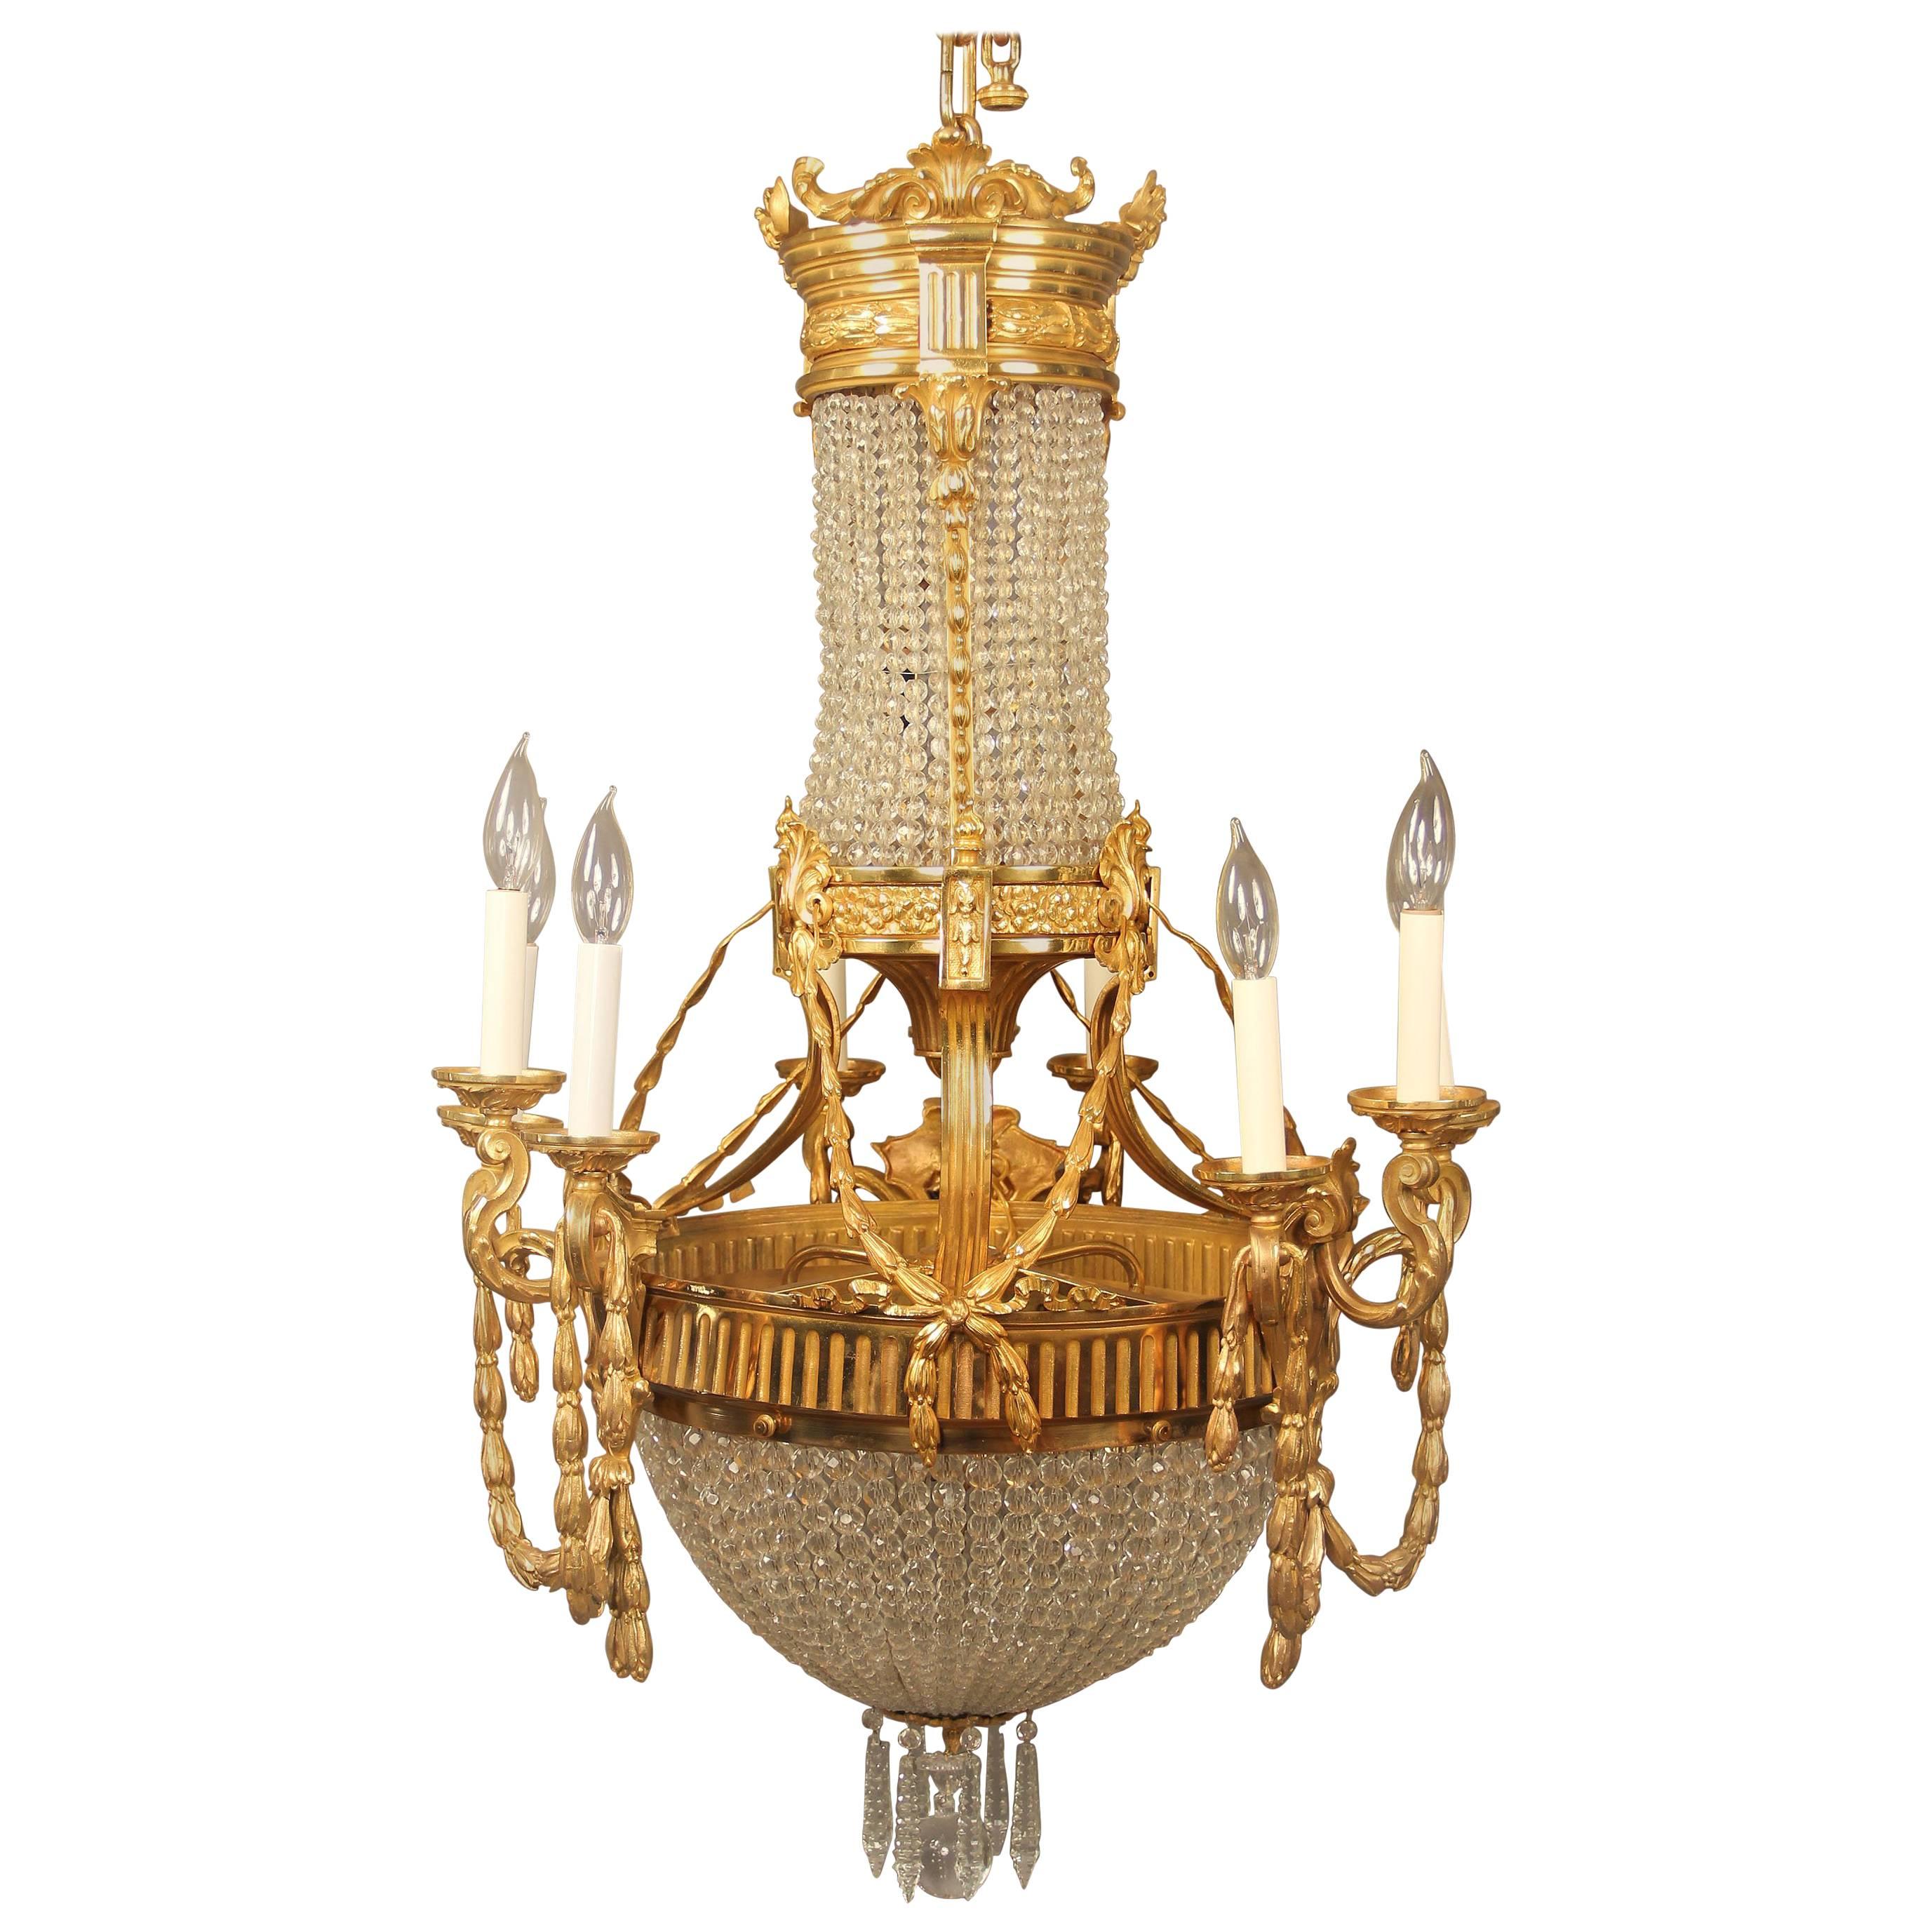  Interessanter Korb-Kronleuchter aus vergoldeter Bronze und Kristall aus dem späten 19. Jahrhundert